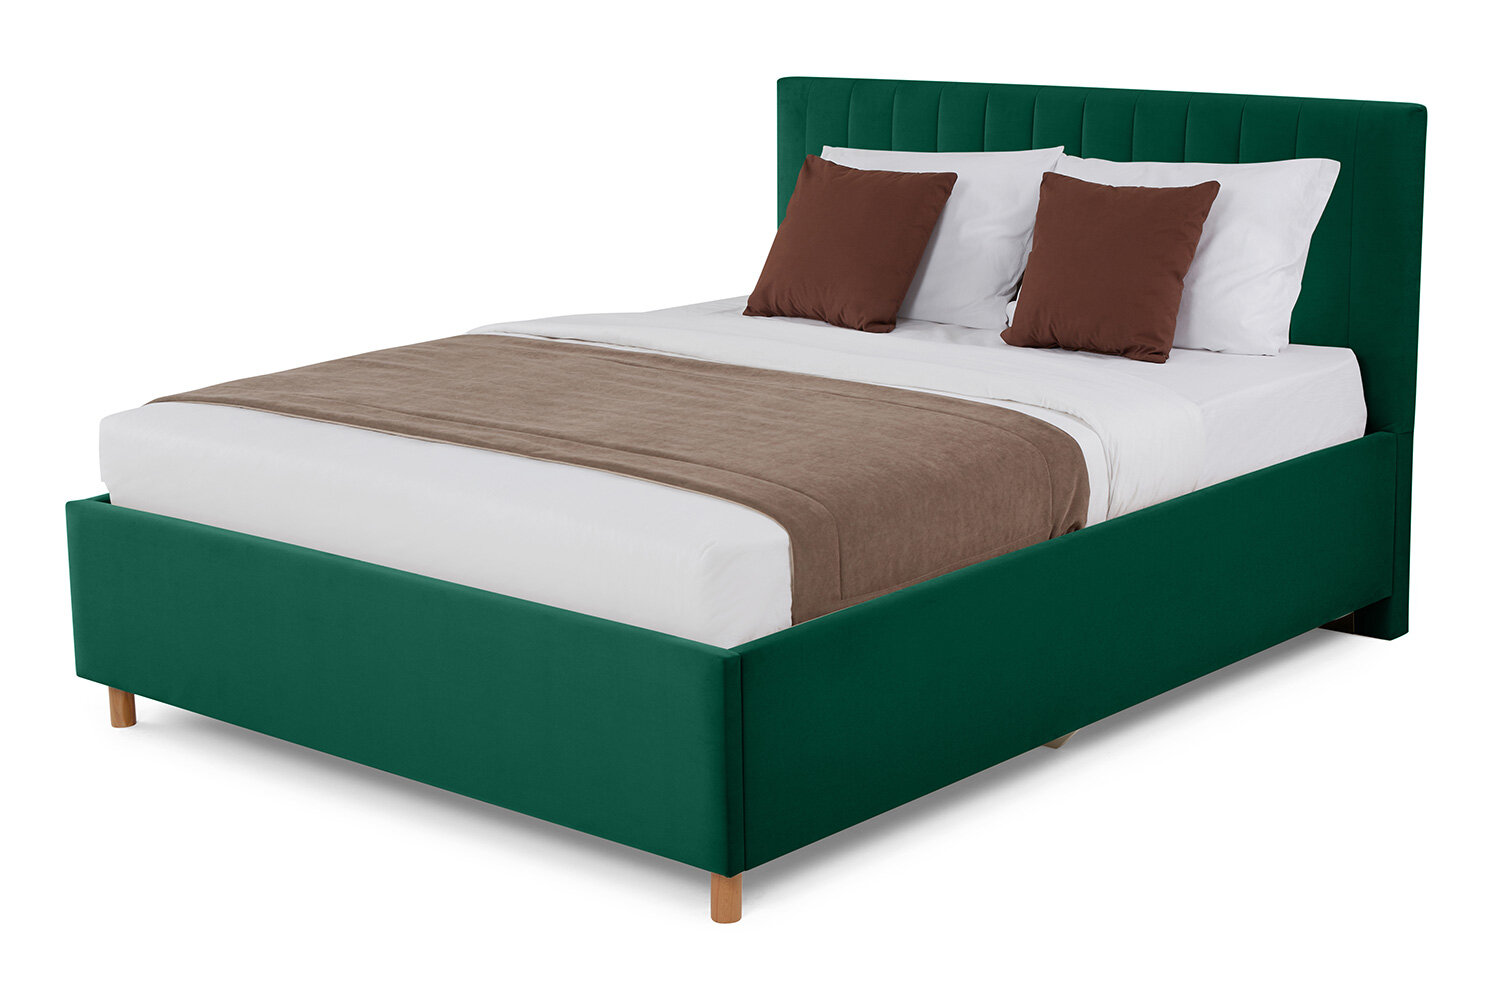 Кровать с подъёмным механизмом Hoff Garda